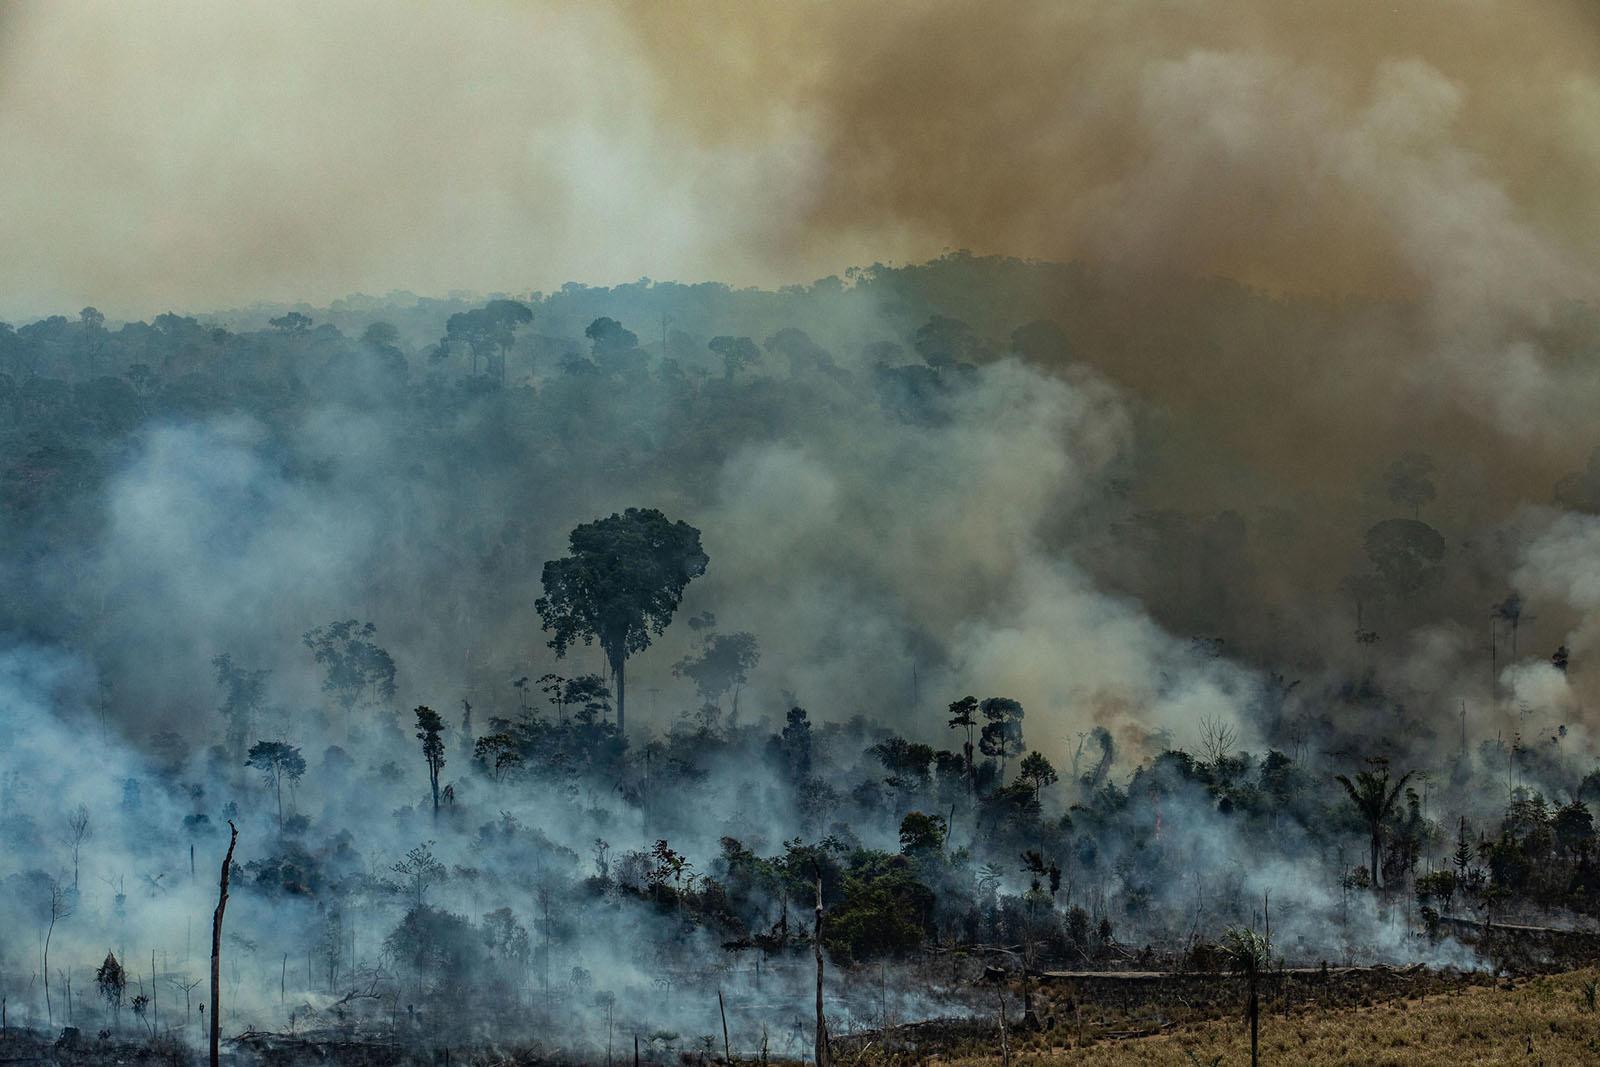 NASA verileri Amazonlarda yangın yoğunluğunun rekor düzeye ulaştığını gösteriyor